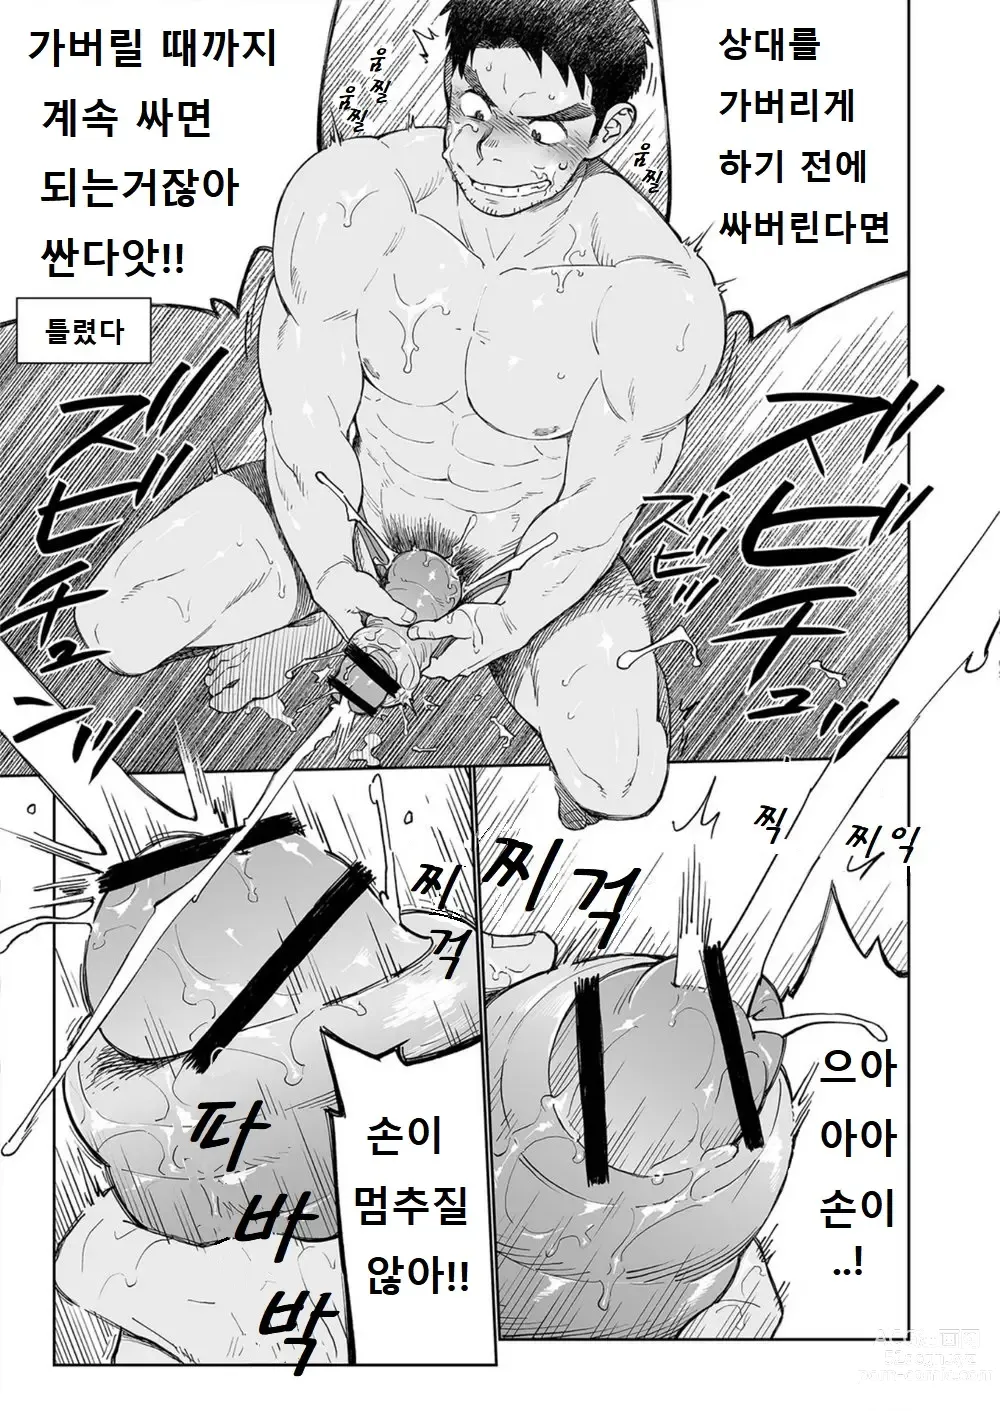 Page 14 of doujinshi 우시오 코치의 푸슉푸슉하는 하루